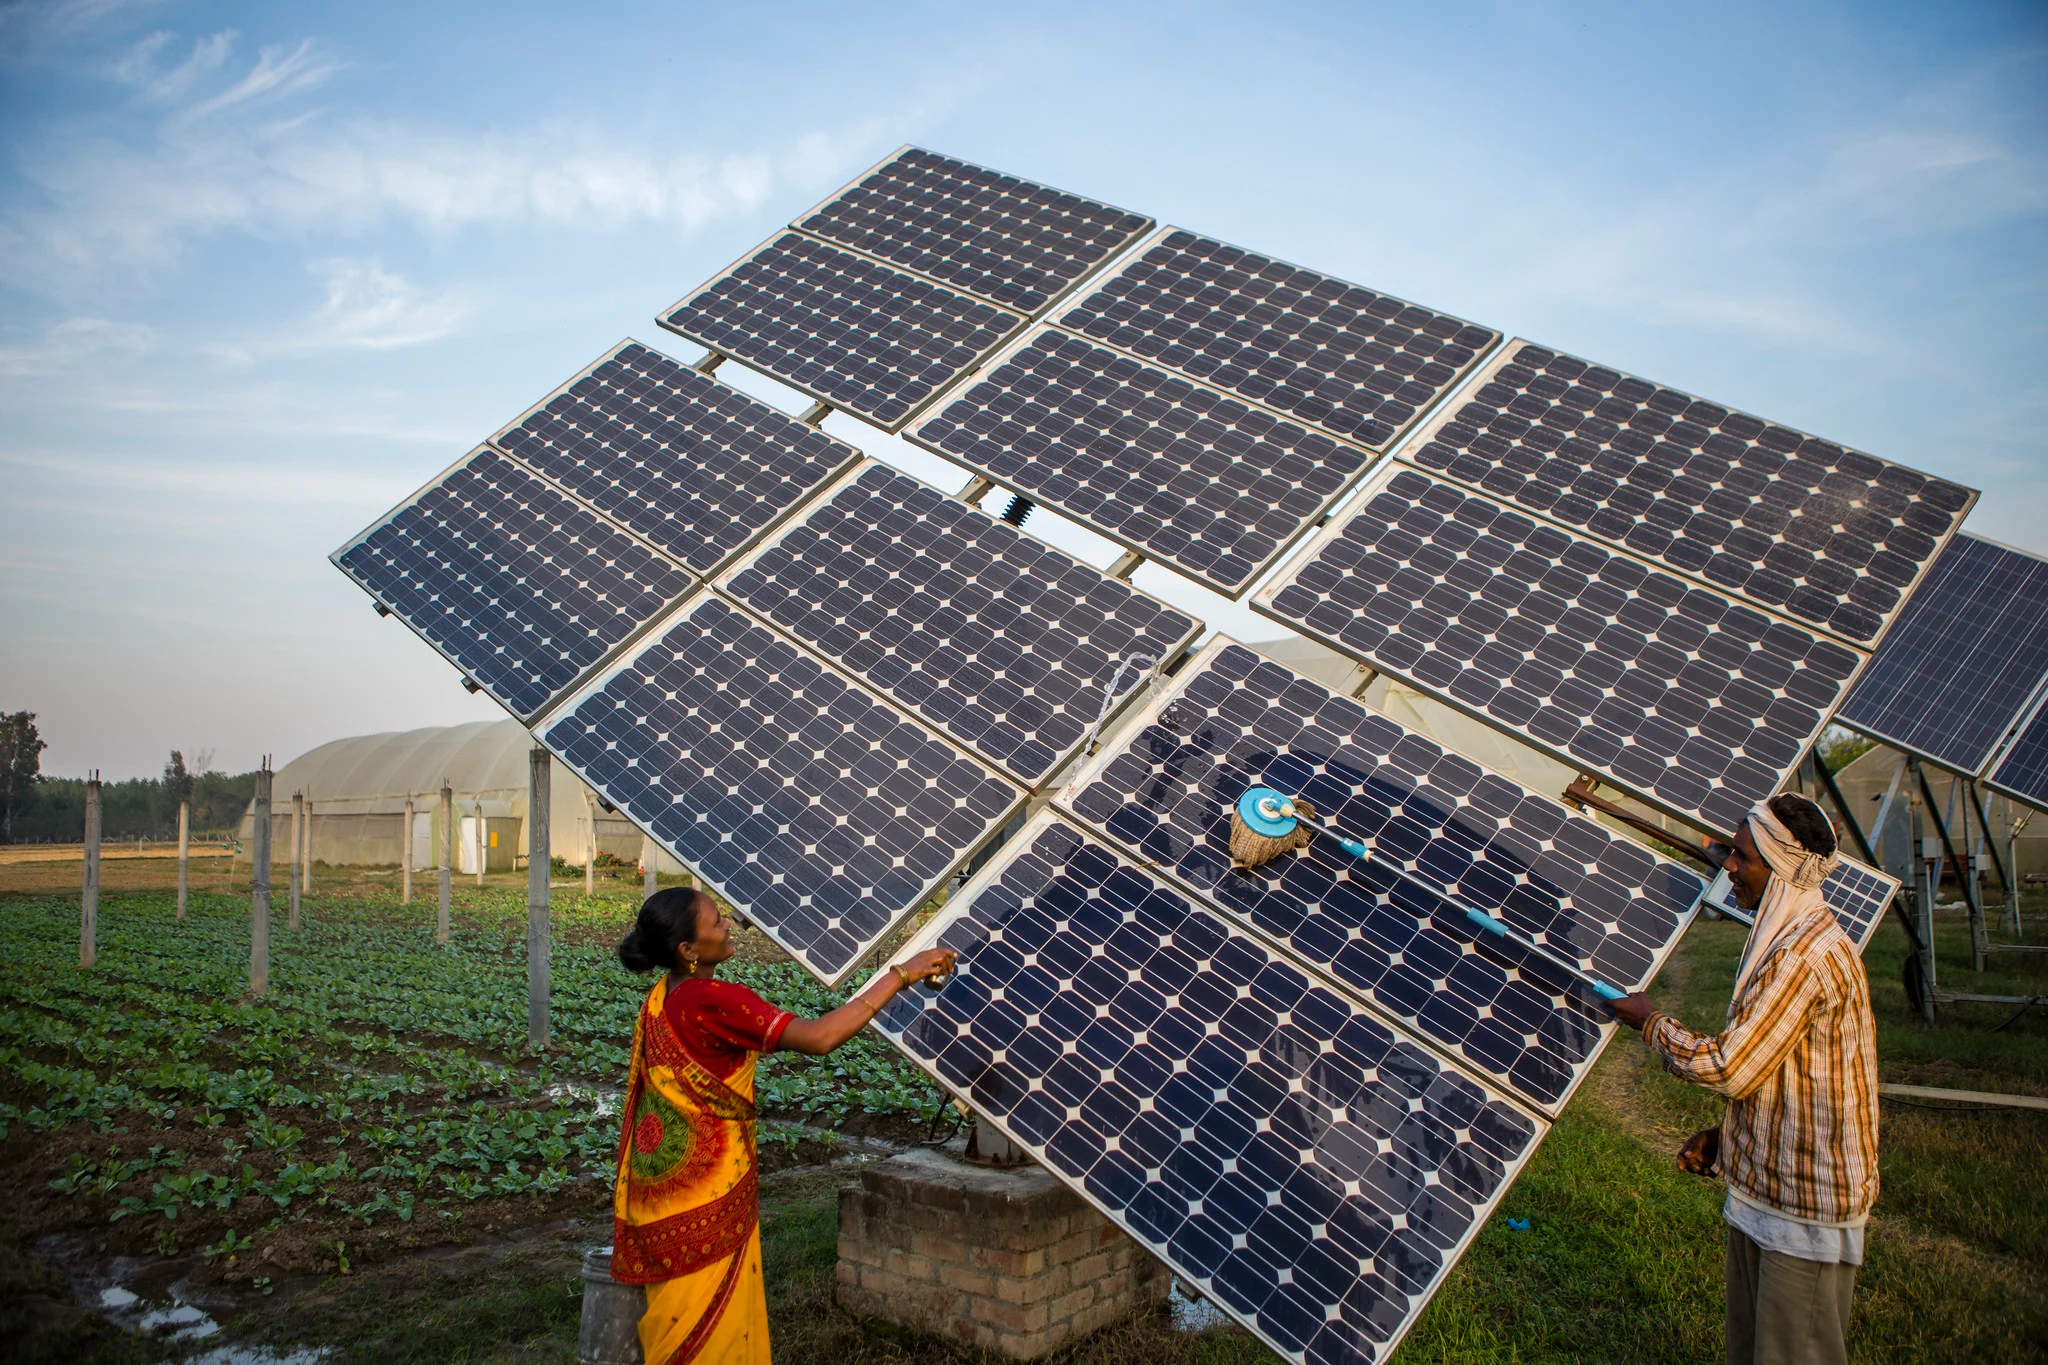 عاملان يقومان بتركيب ألواح شمسية ضمن قطاع الطاقة المتجددة في الهند